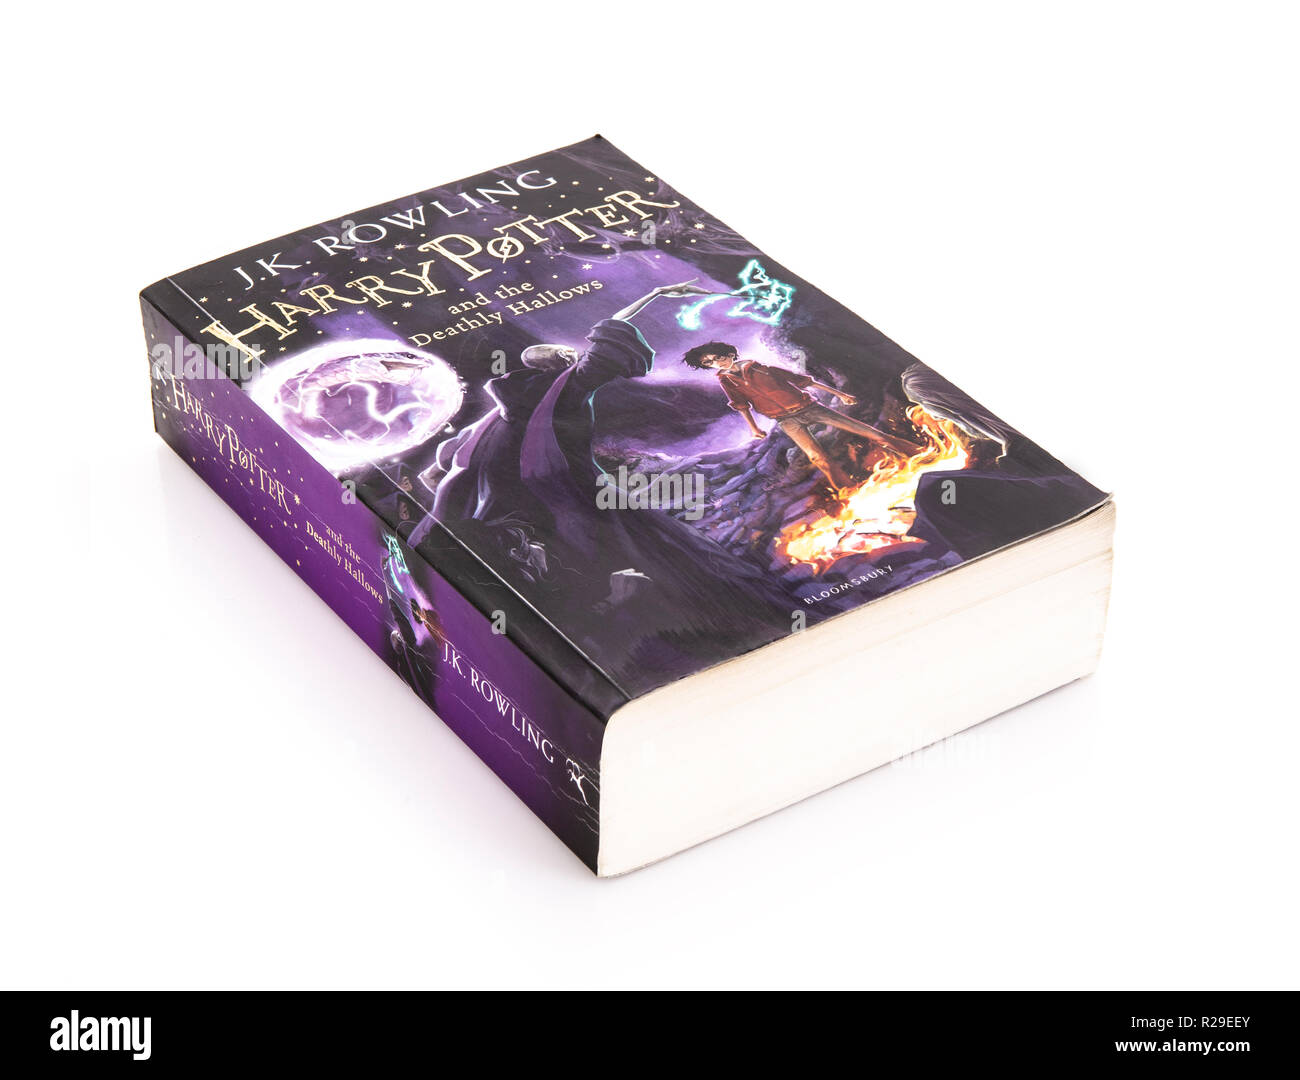 SWINDON, Regno Unito - 18 novembre 2018: Harry Potter ed il Deathly Hallows edizione tascabile su sfondo bianco Foto Stock